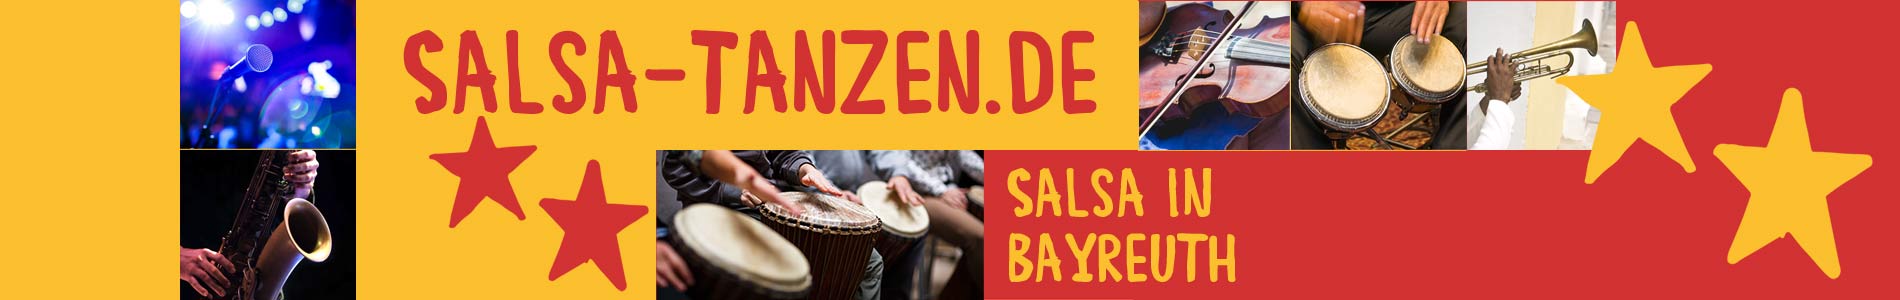 Salsa in Bayreuth – Salsa lernen und tanzen, Tanzkurse, Partys, Veranstaltungen